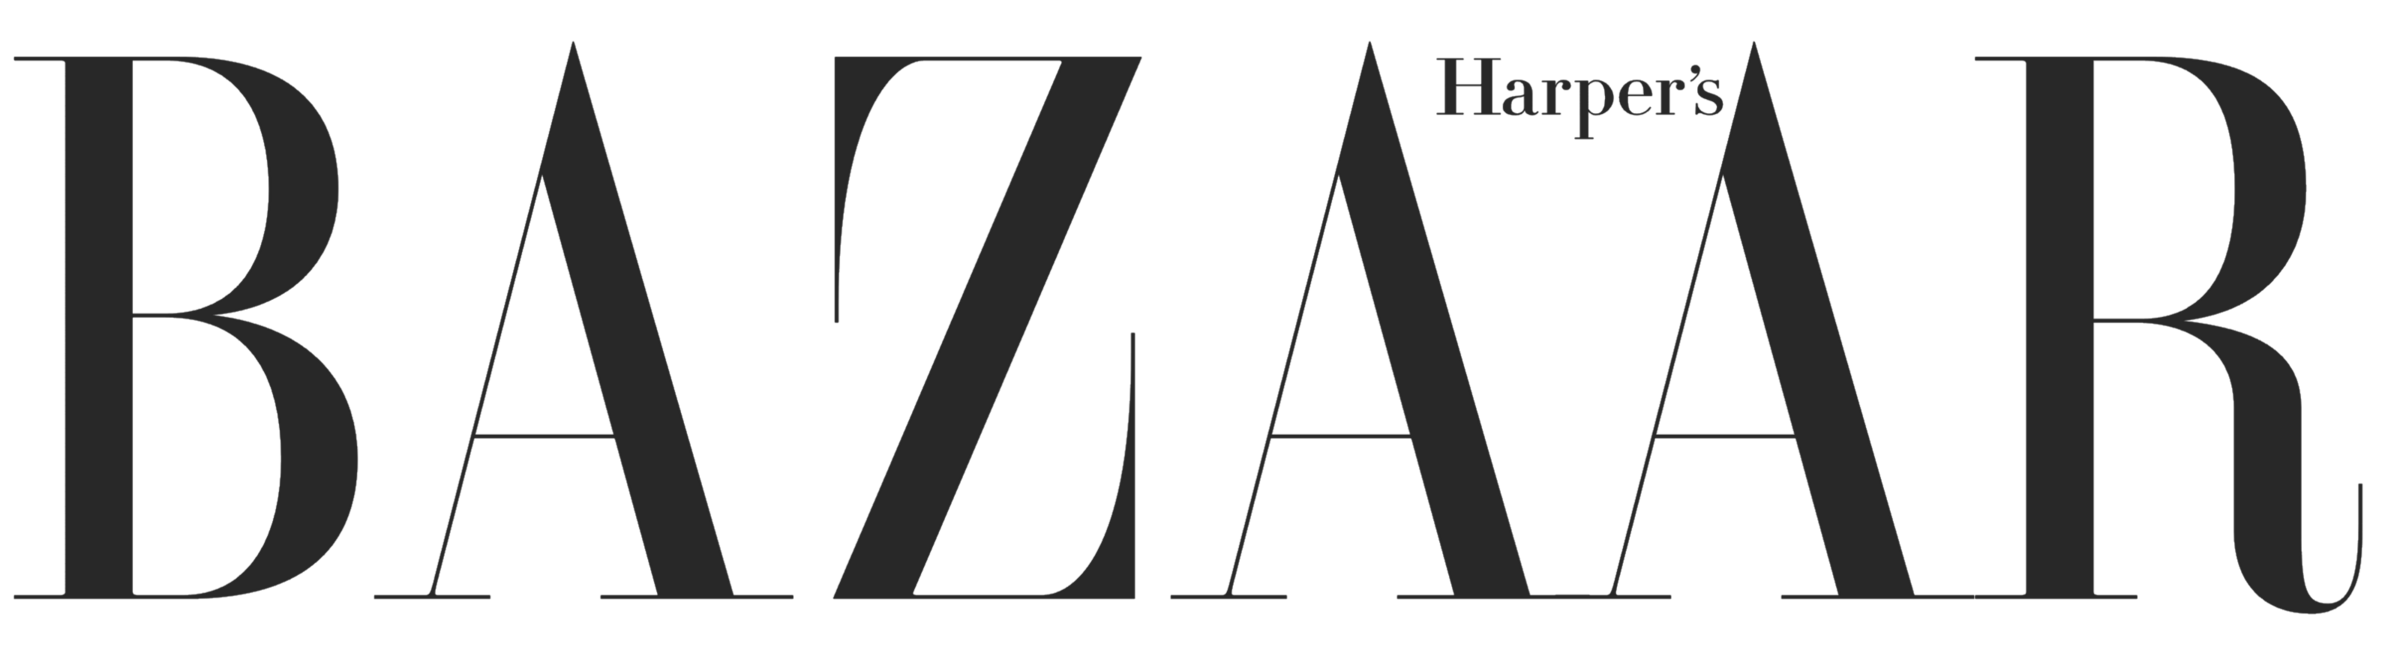 Harpers_Bazaar_logo_logotype